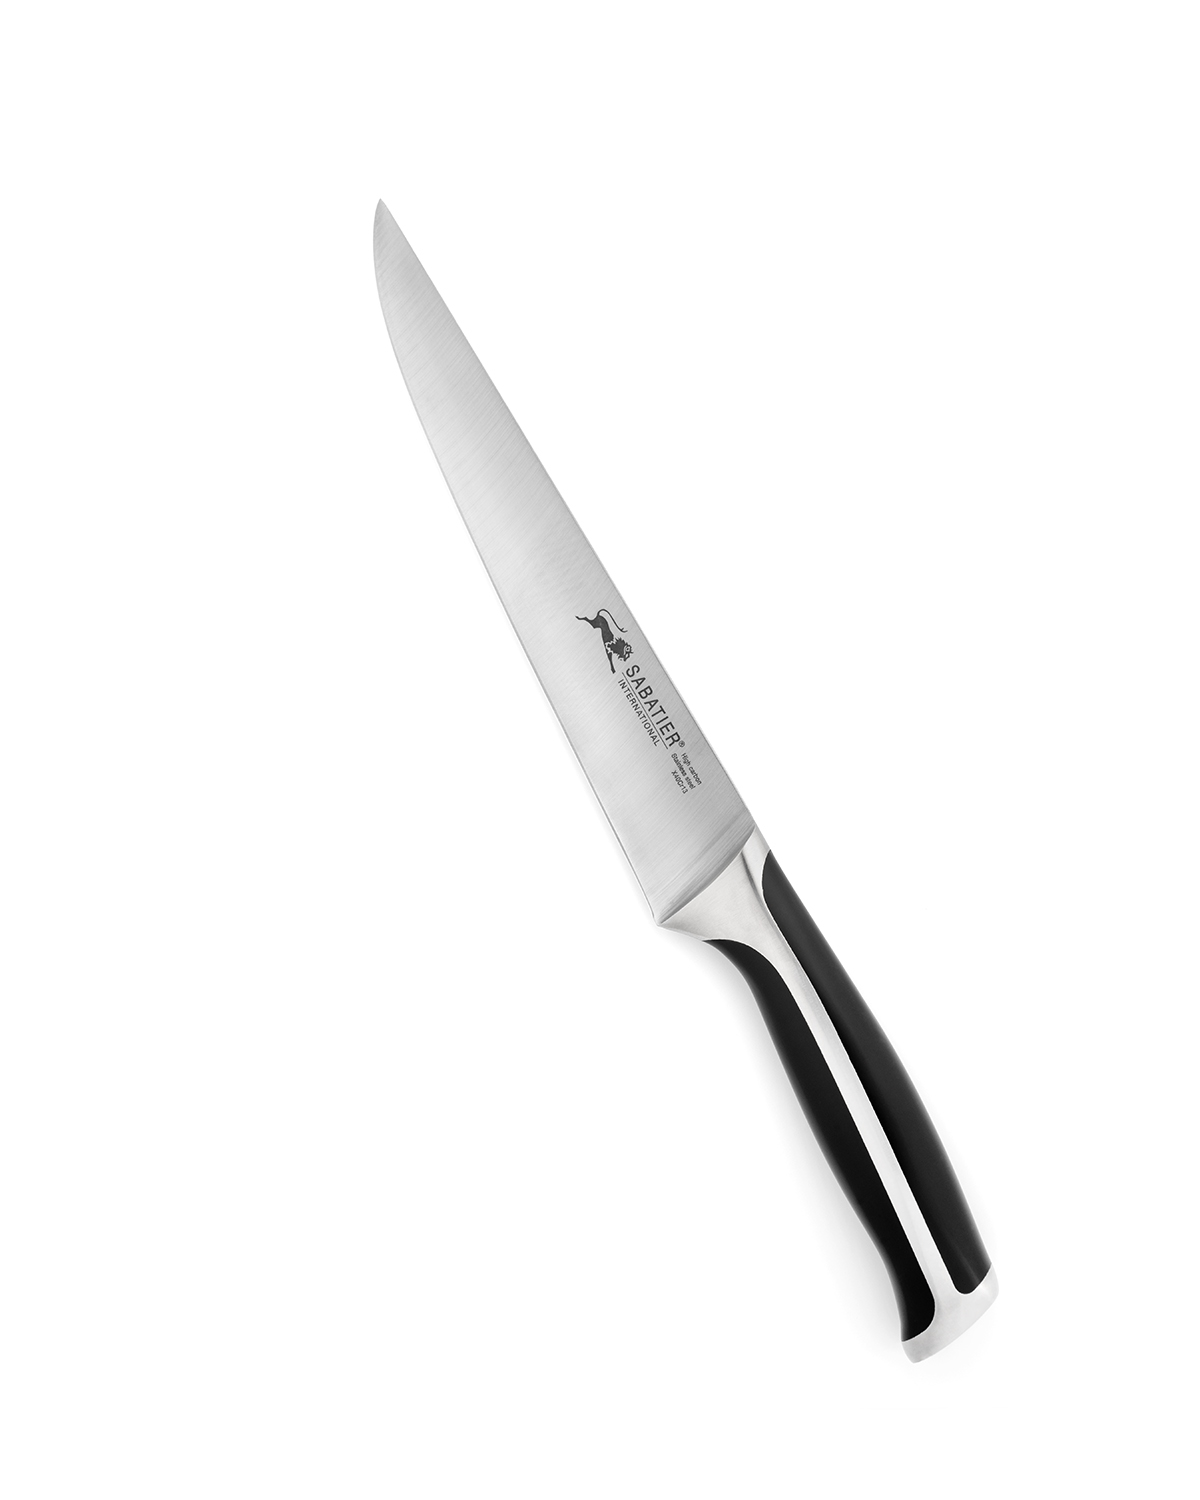 Кухонные ножи 20 см. Ножи Lion Sabatier. Carving Knife кухонный нож. Нож поварской Spear & Jackson. Нож Sabatier Edonist 806380.